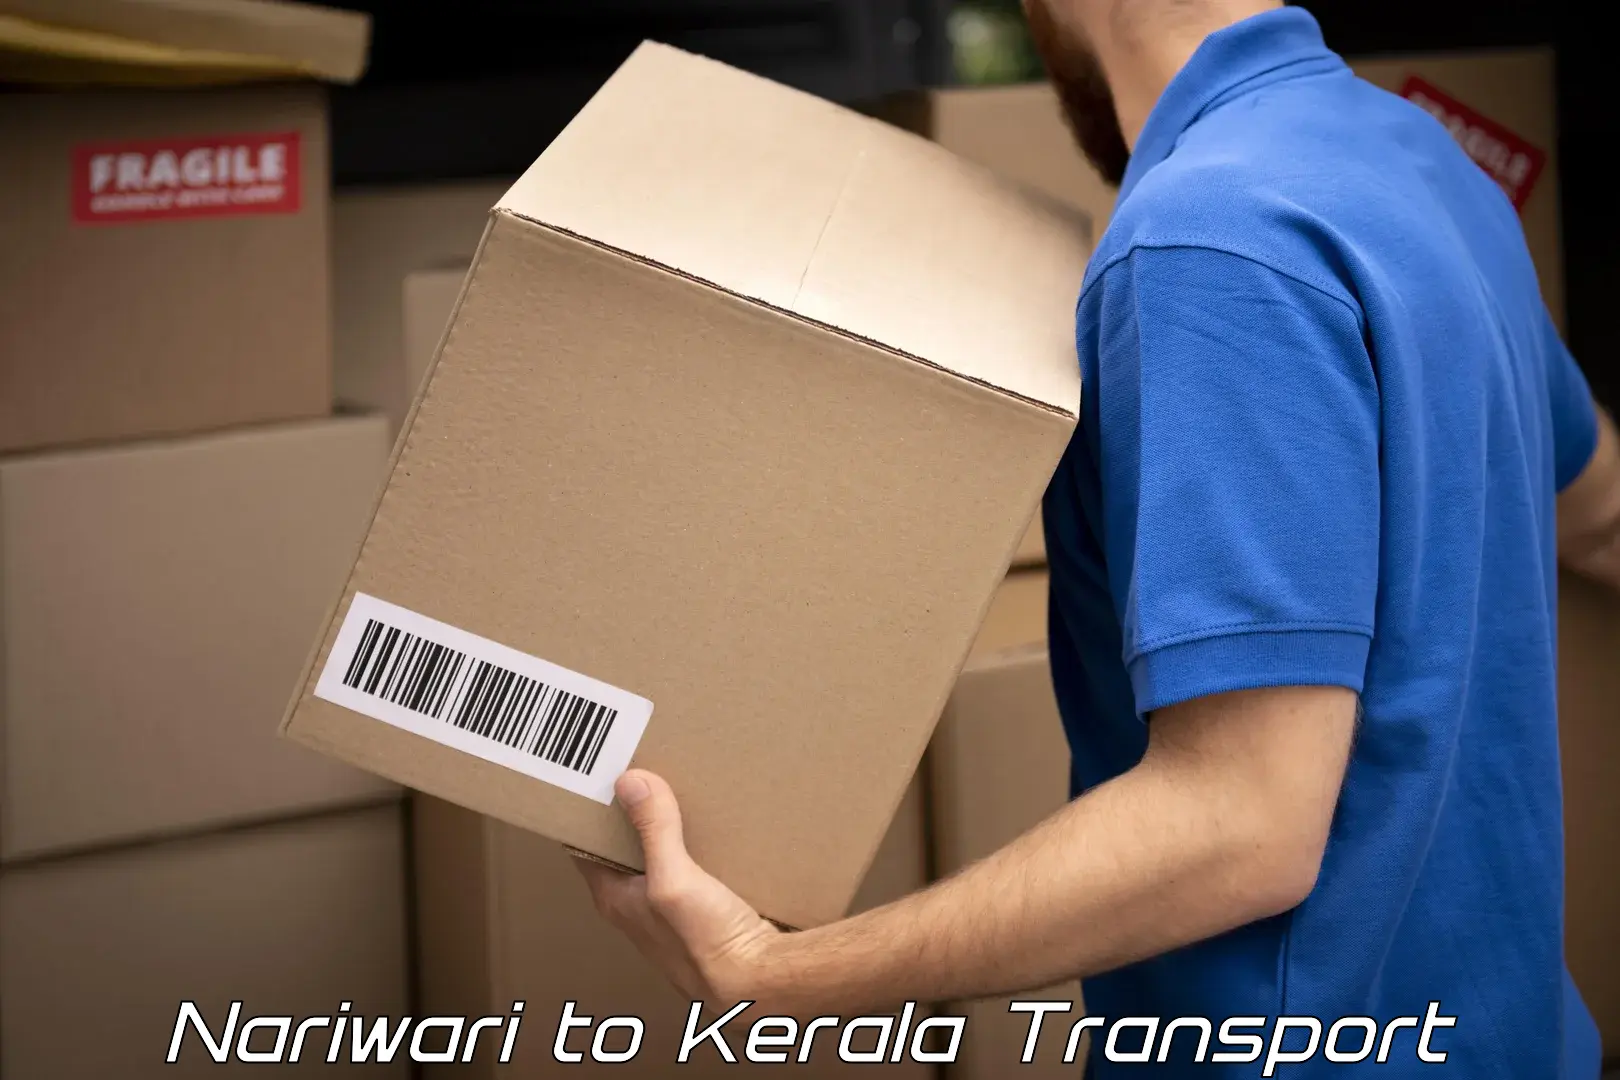 Furniture transport service Nariwari to Kerala